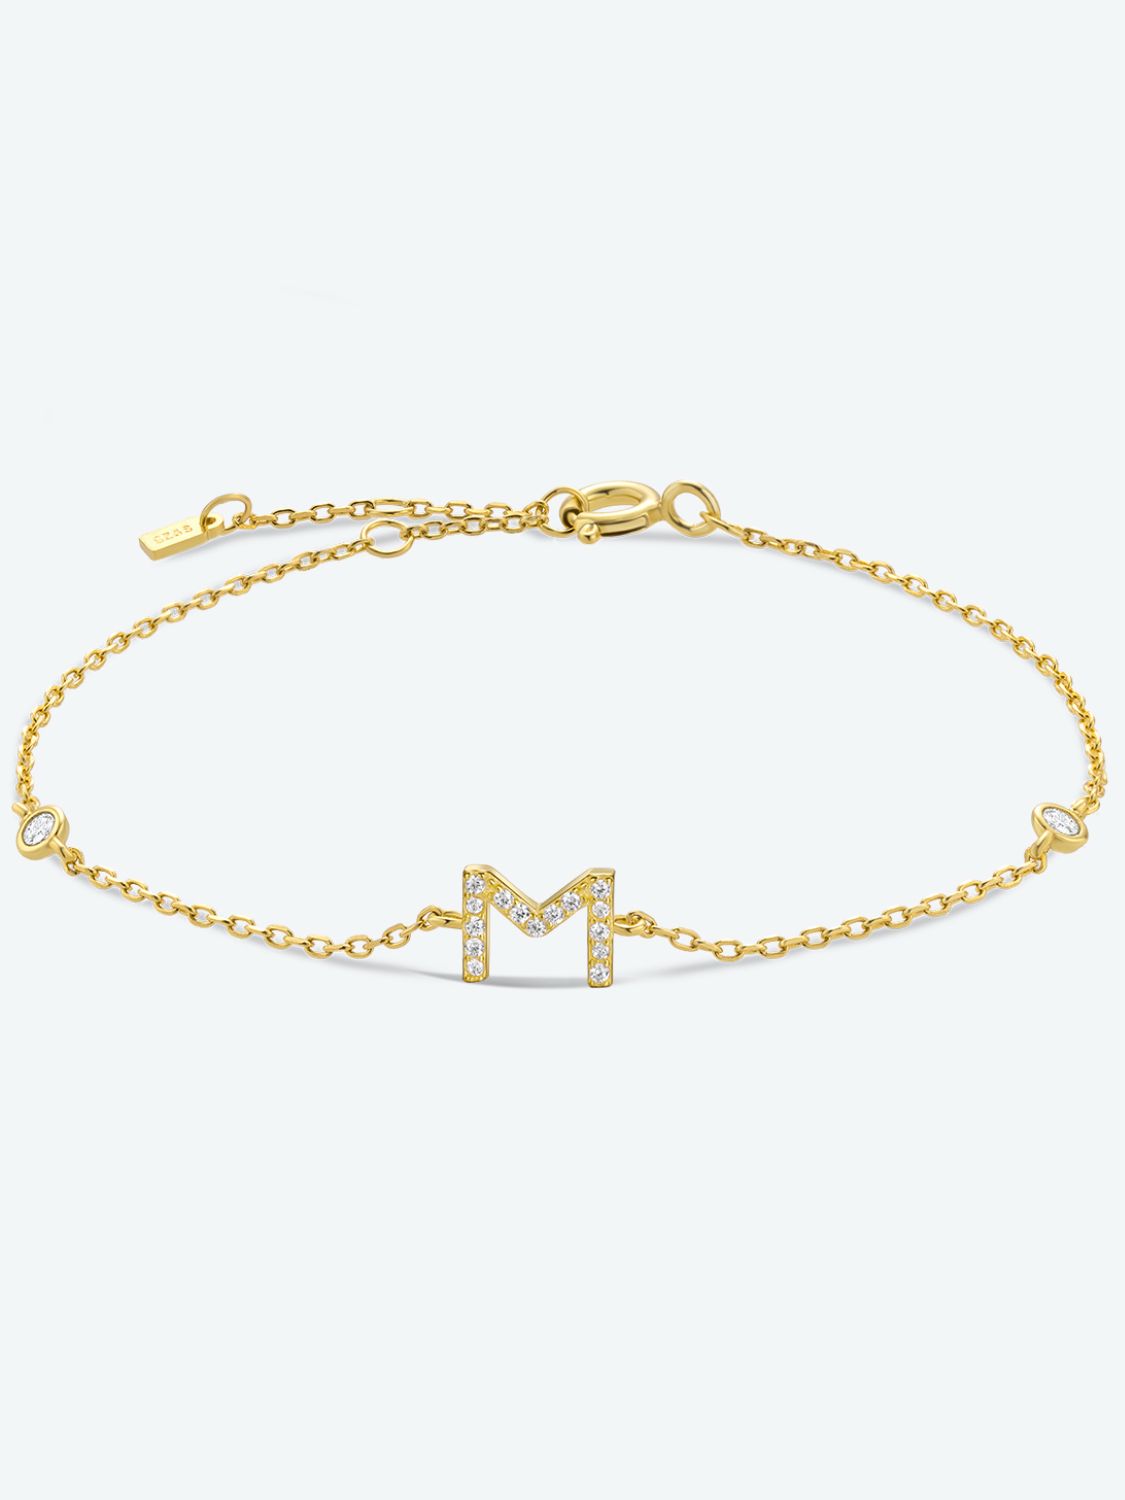 L To P Zircon 925 Sterling Silver Bracelet - M-Gold / One Size - Women’s Jewelry - Bracelets - 7 - 2024